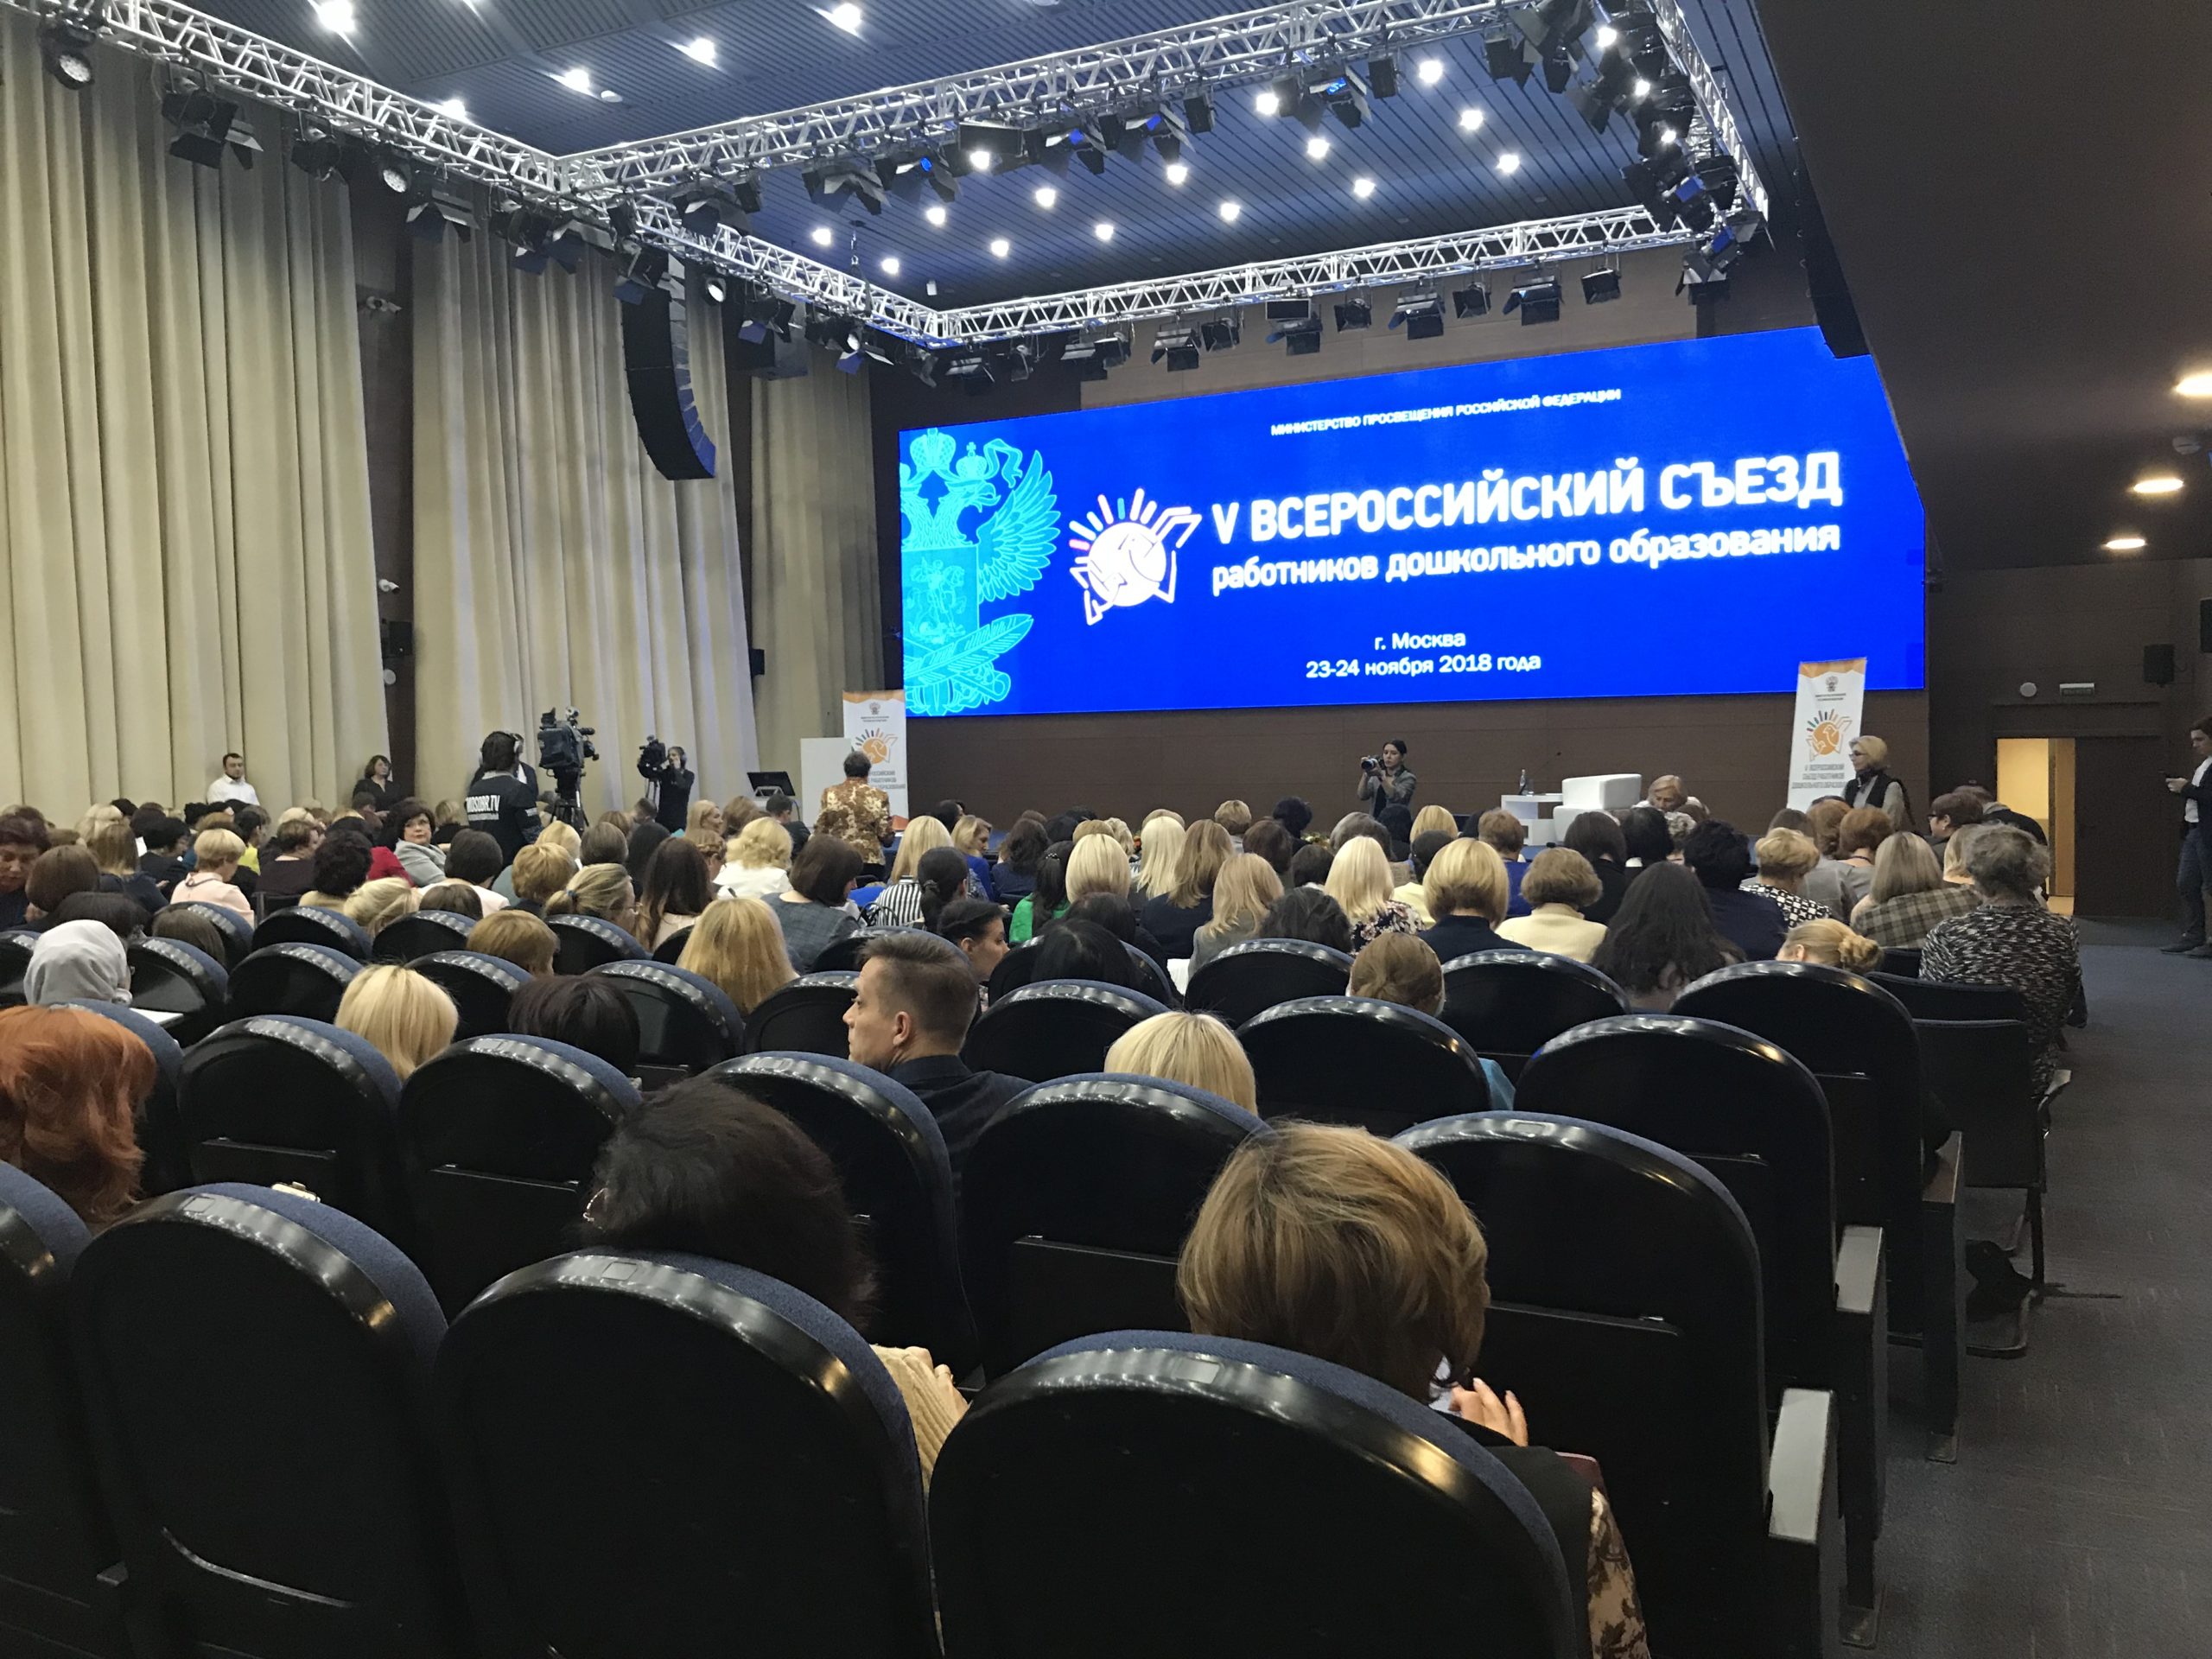 V Всероссийский съезд работников дошкольного образования